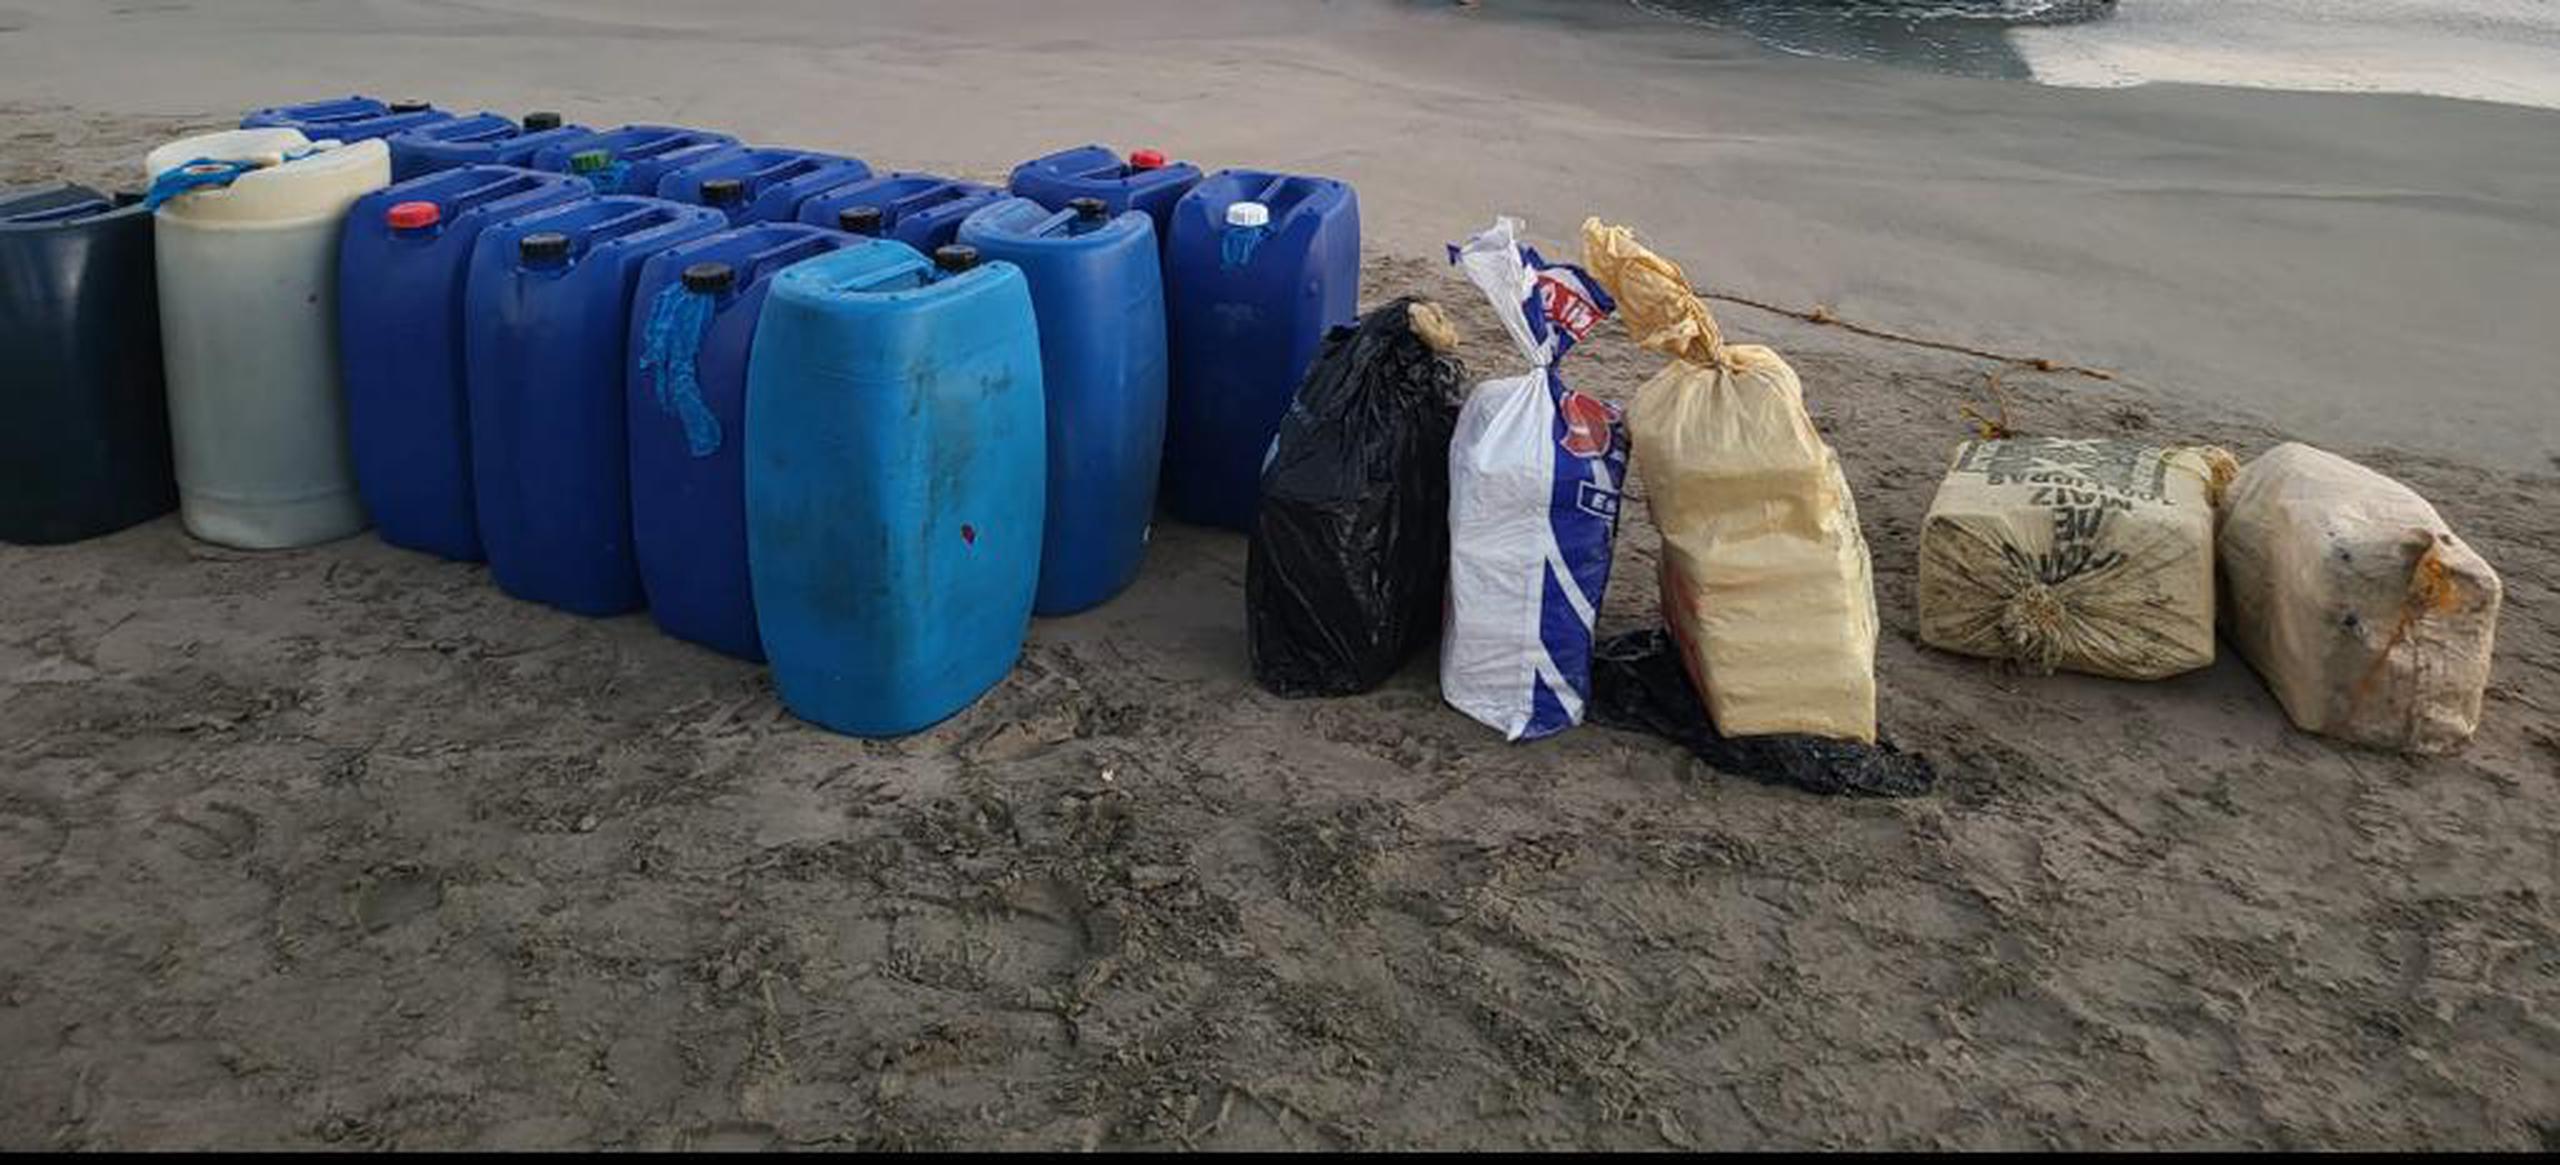 Cinco fardos con cocaína procedentes de República Dominicana fueron ocupados en una yola que llegó a la costa de Dorado.